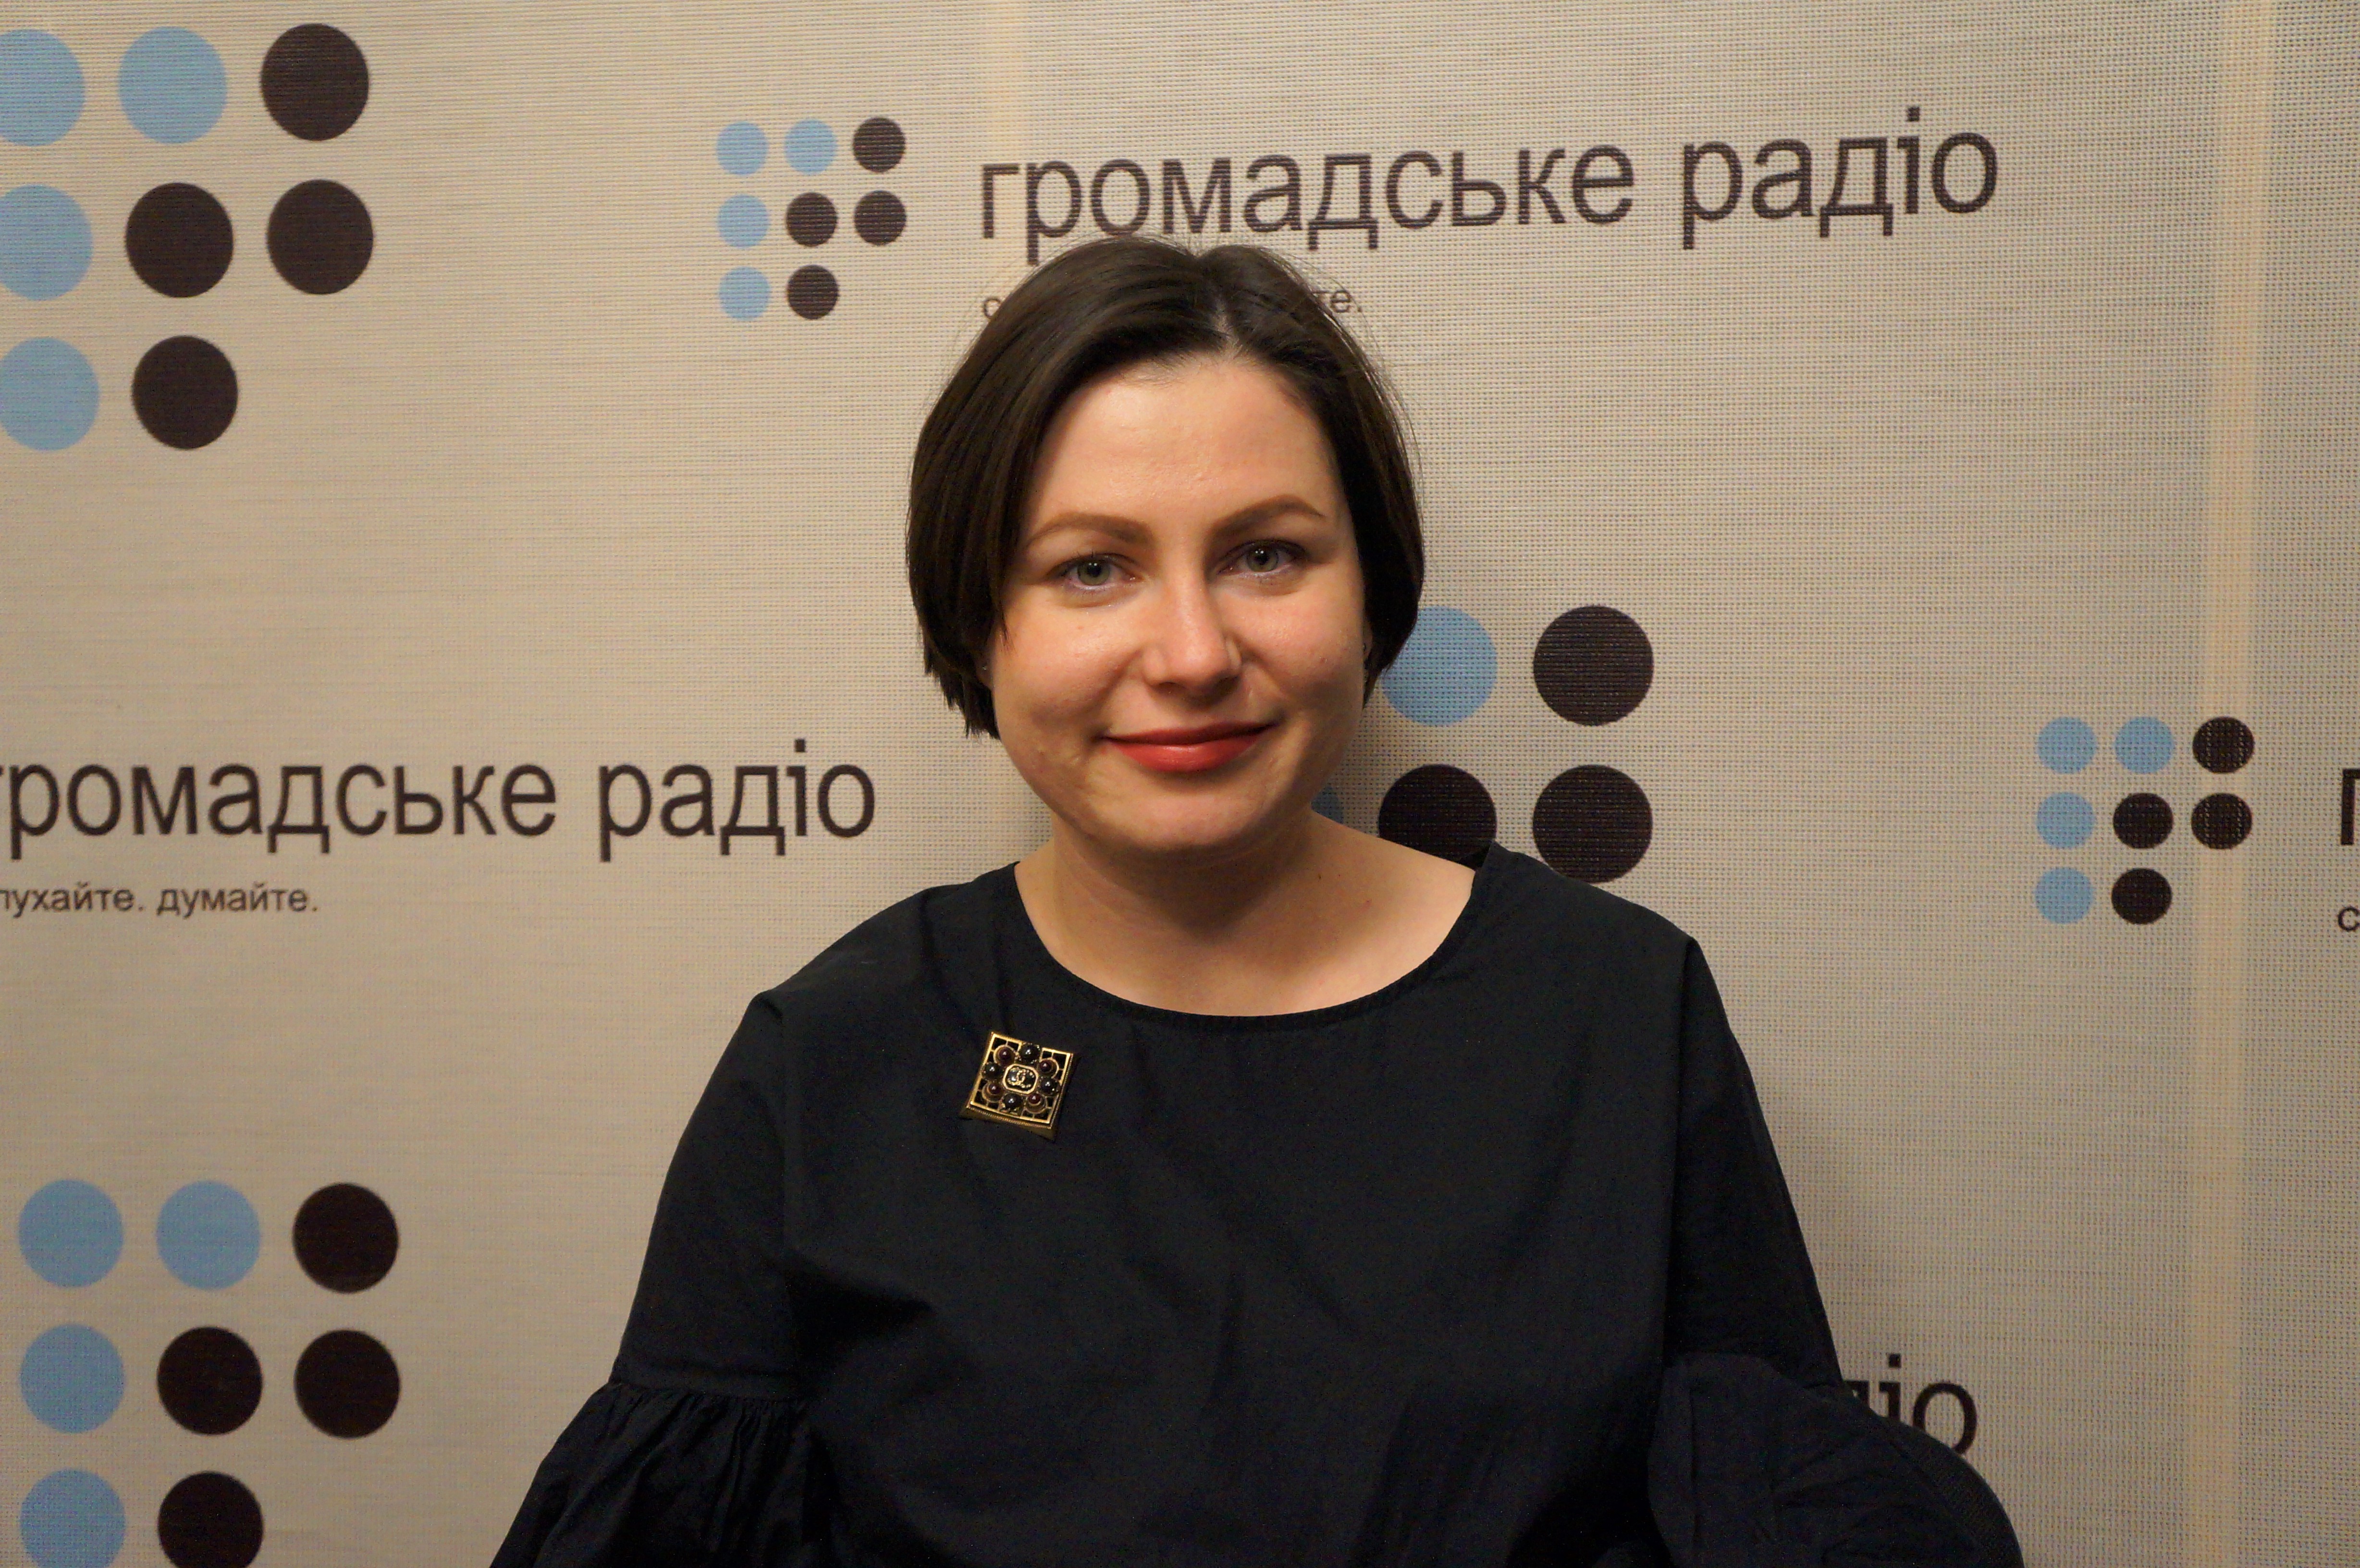 Страхові компанії в Україні відмовляються страхувати журналістів, які працюють в АТО – Ірина Земляна